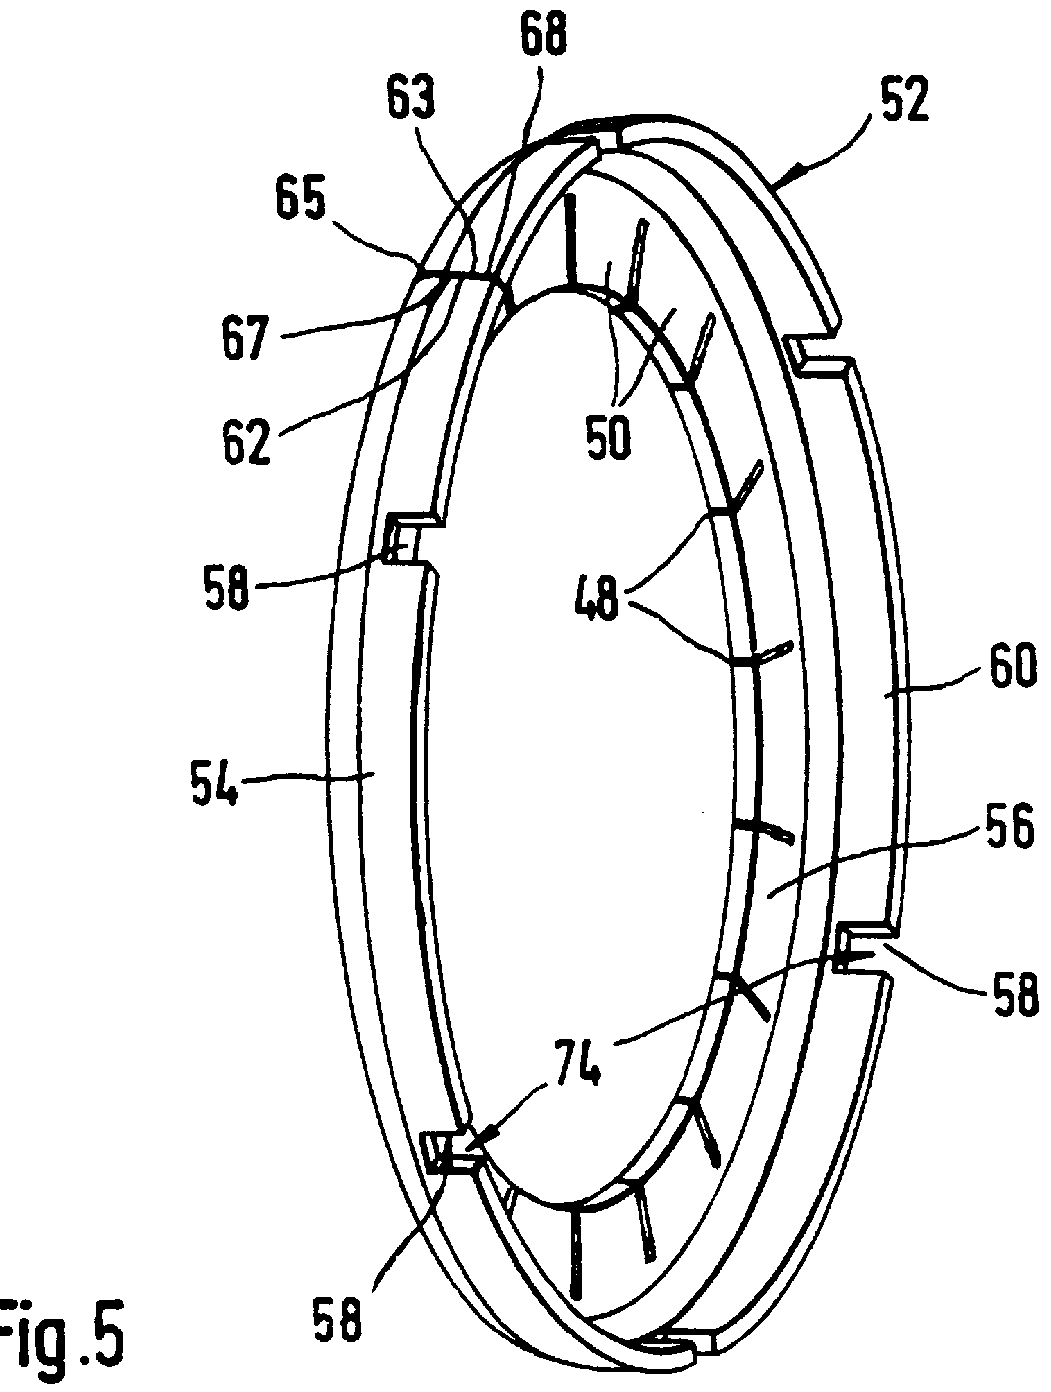 Flywheel arrangement with an added mass